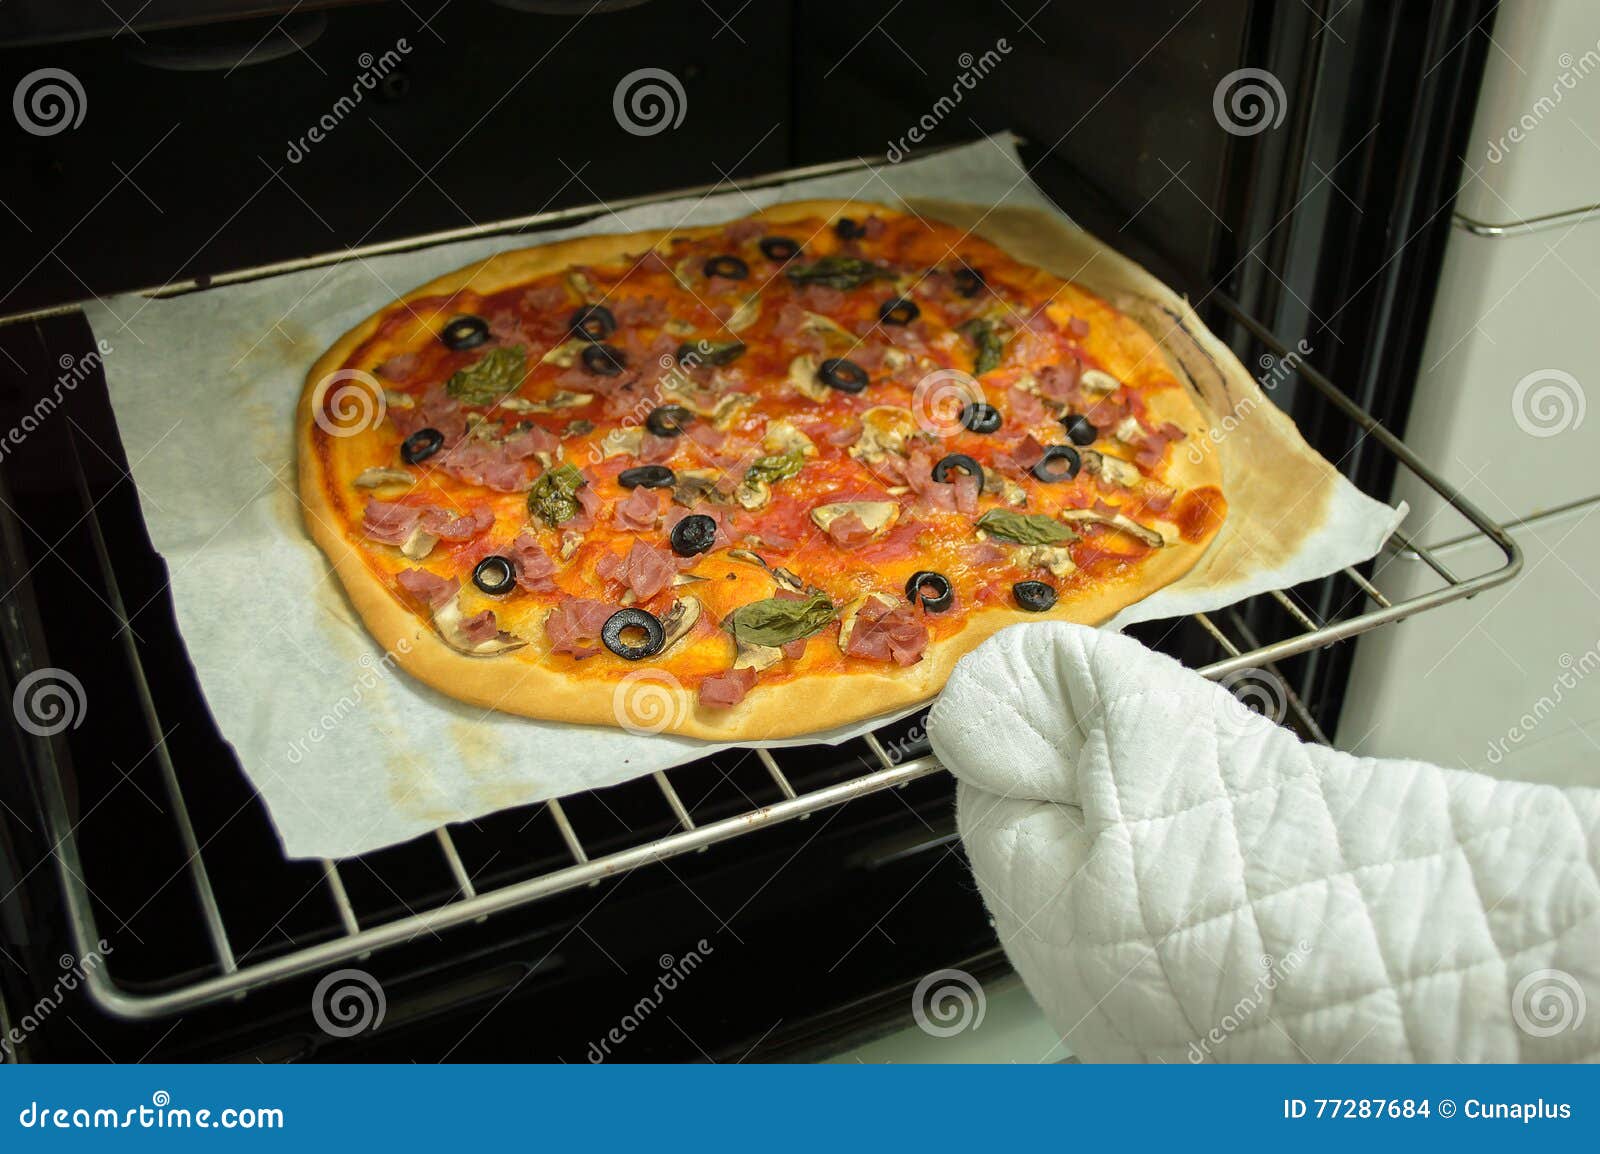 что делать если пицца пересохла в духовке фото 17